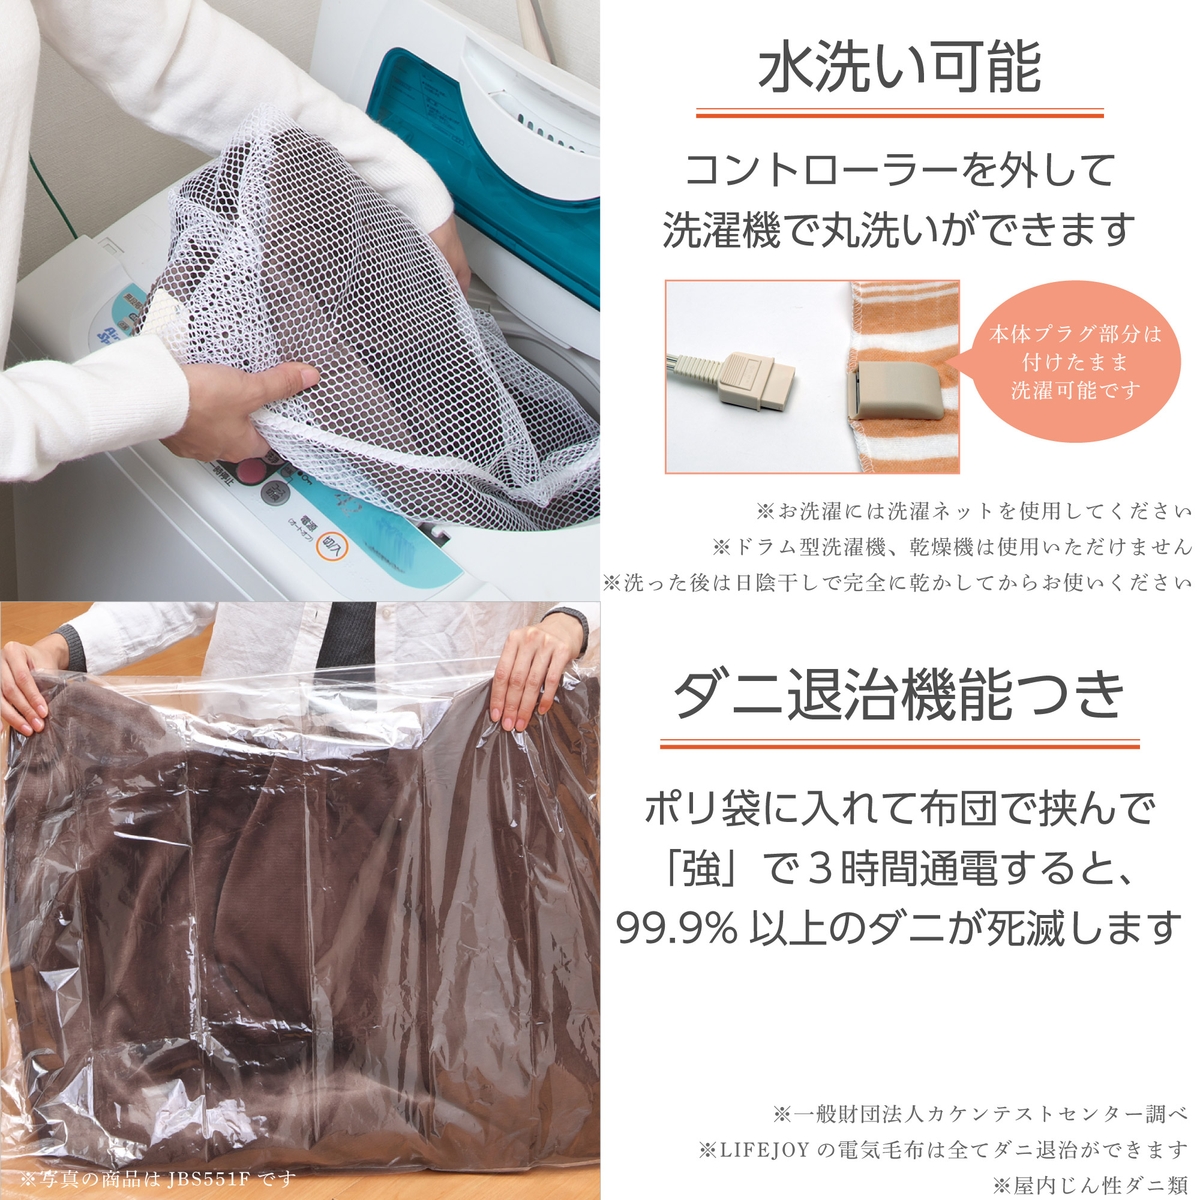 日本製 電気毛布 掛け敷き 188×130cm 洗濯可能 切り忘れ防止タイマー 室温センサー ダニ退治 スライド温度調節 ライフジョイ